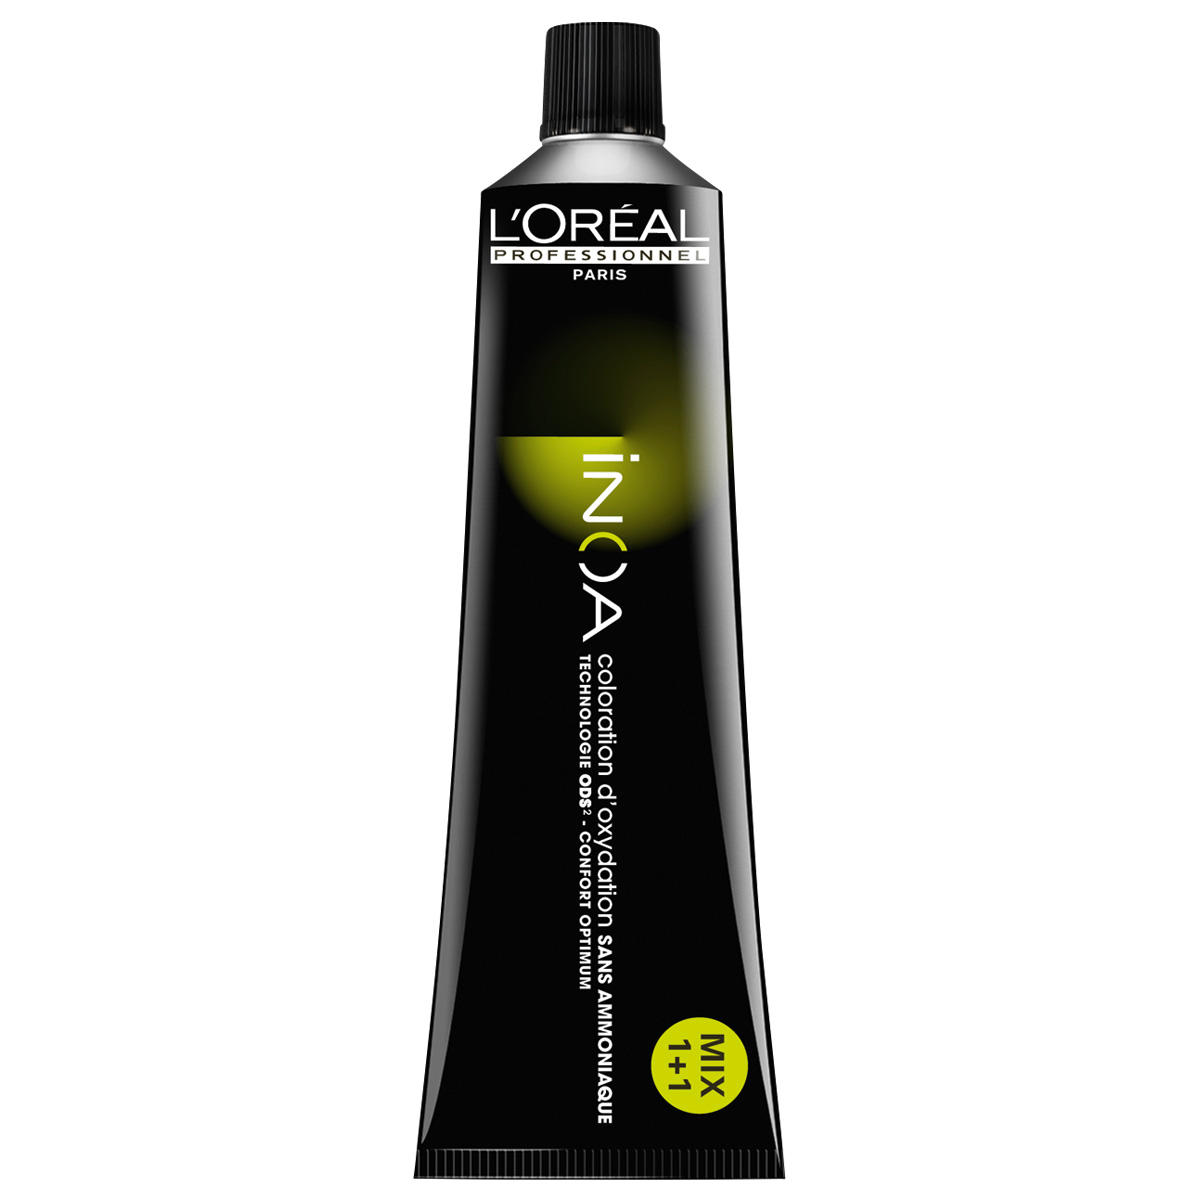 L'Oréal Professionnel Paris Coloration 4 Marrón medio, tubo 60 ml